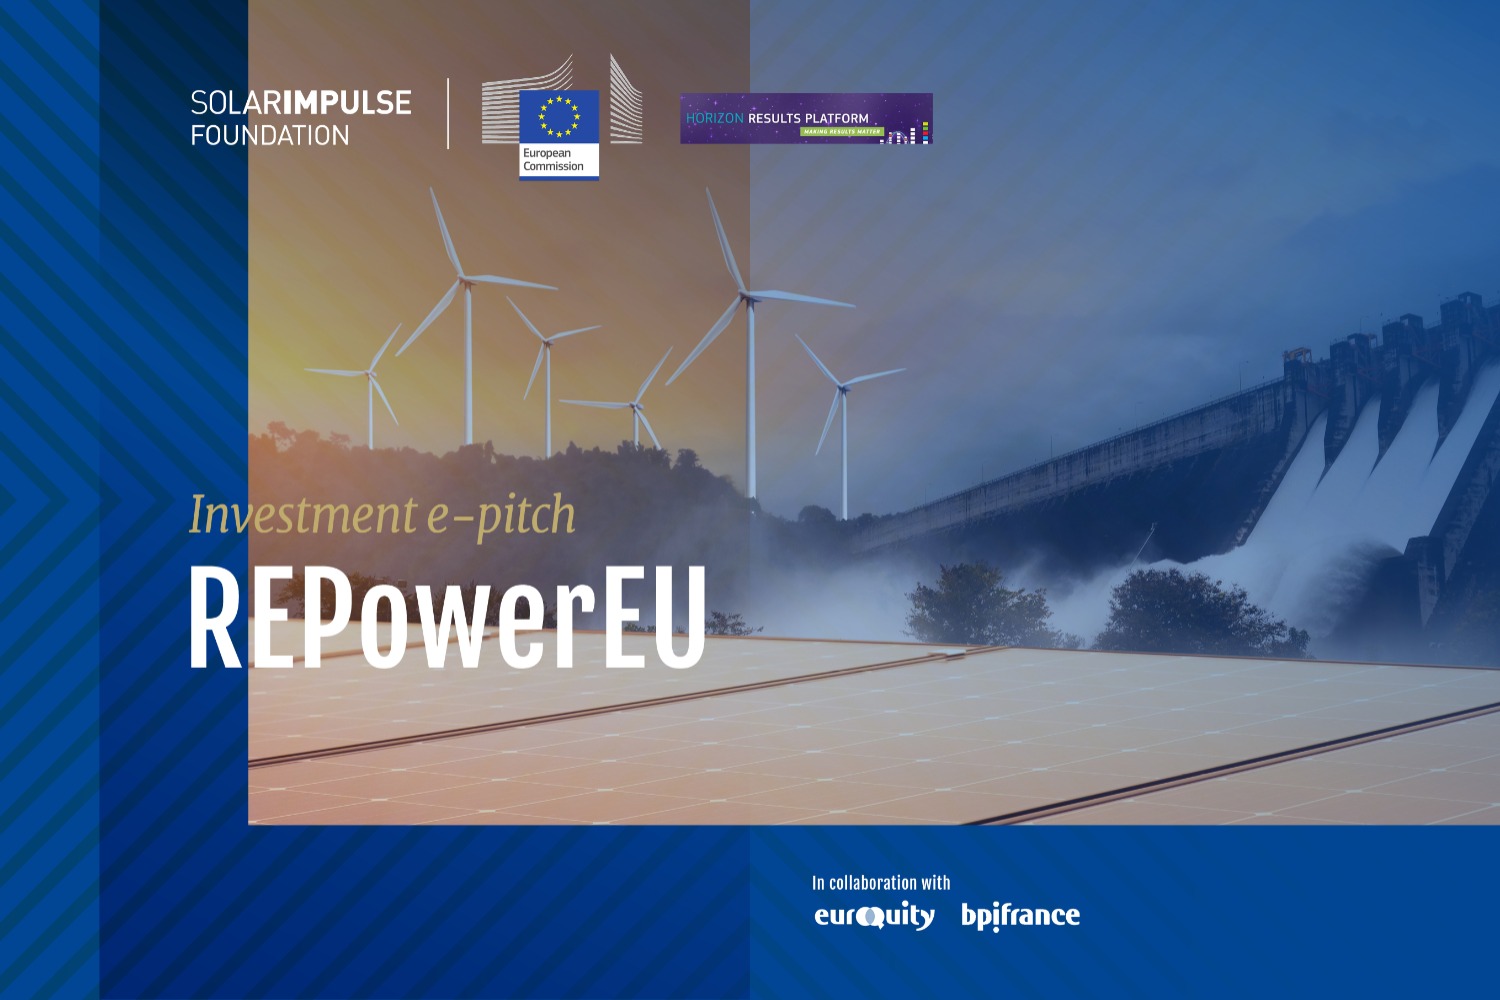 Comisión Europea x Solar Impulse Foundation e-pitch de inversión